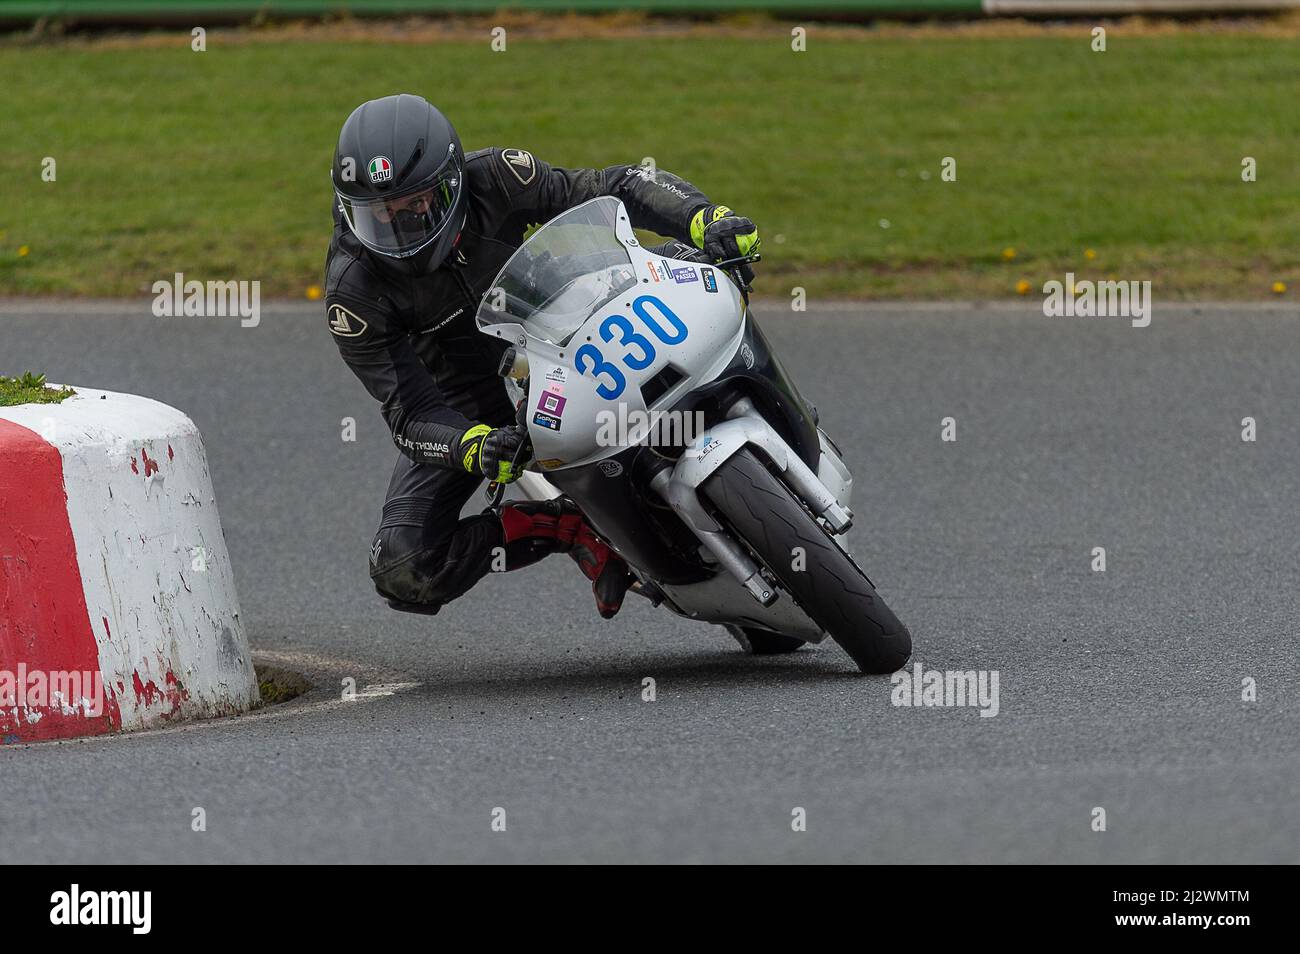 Motorcycle Racing at Mallory Park Stock Photo